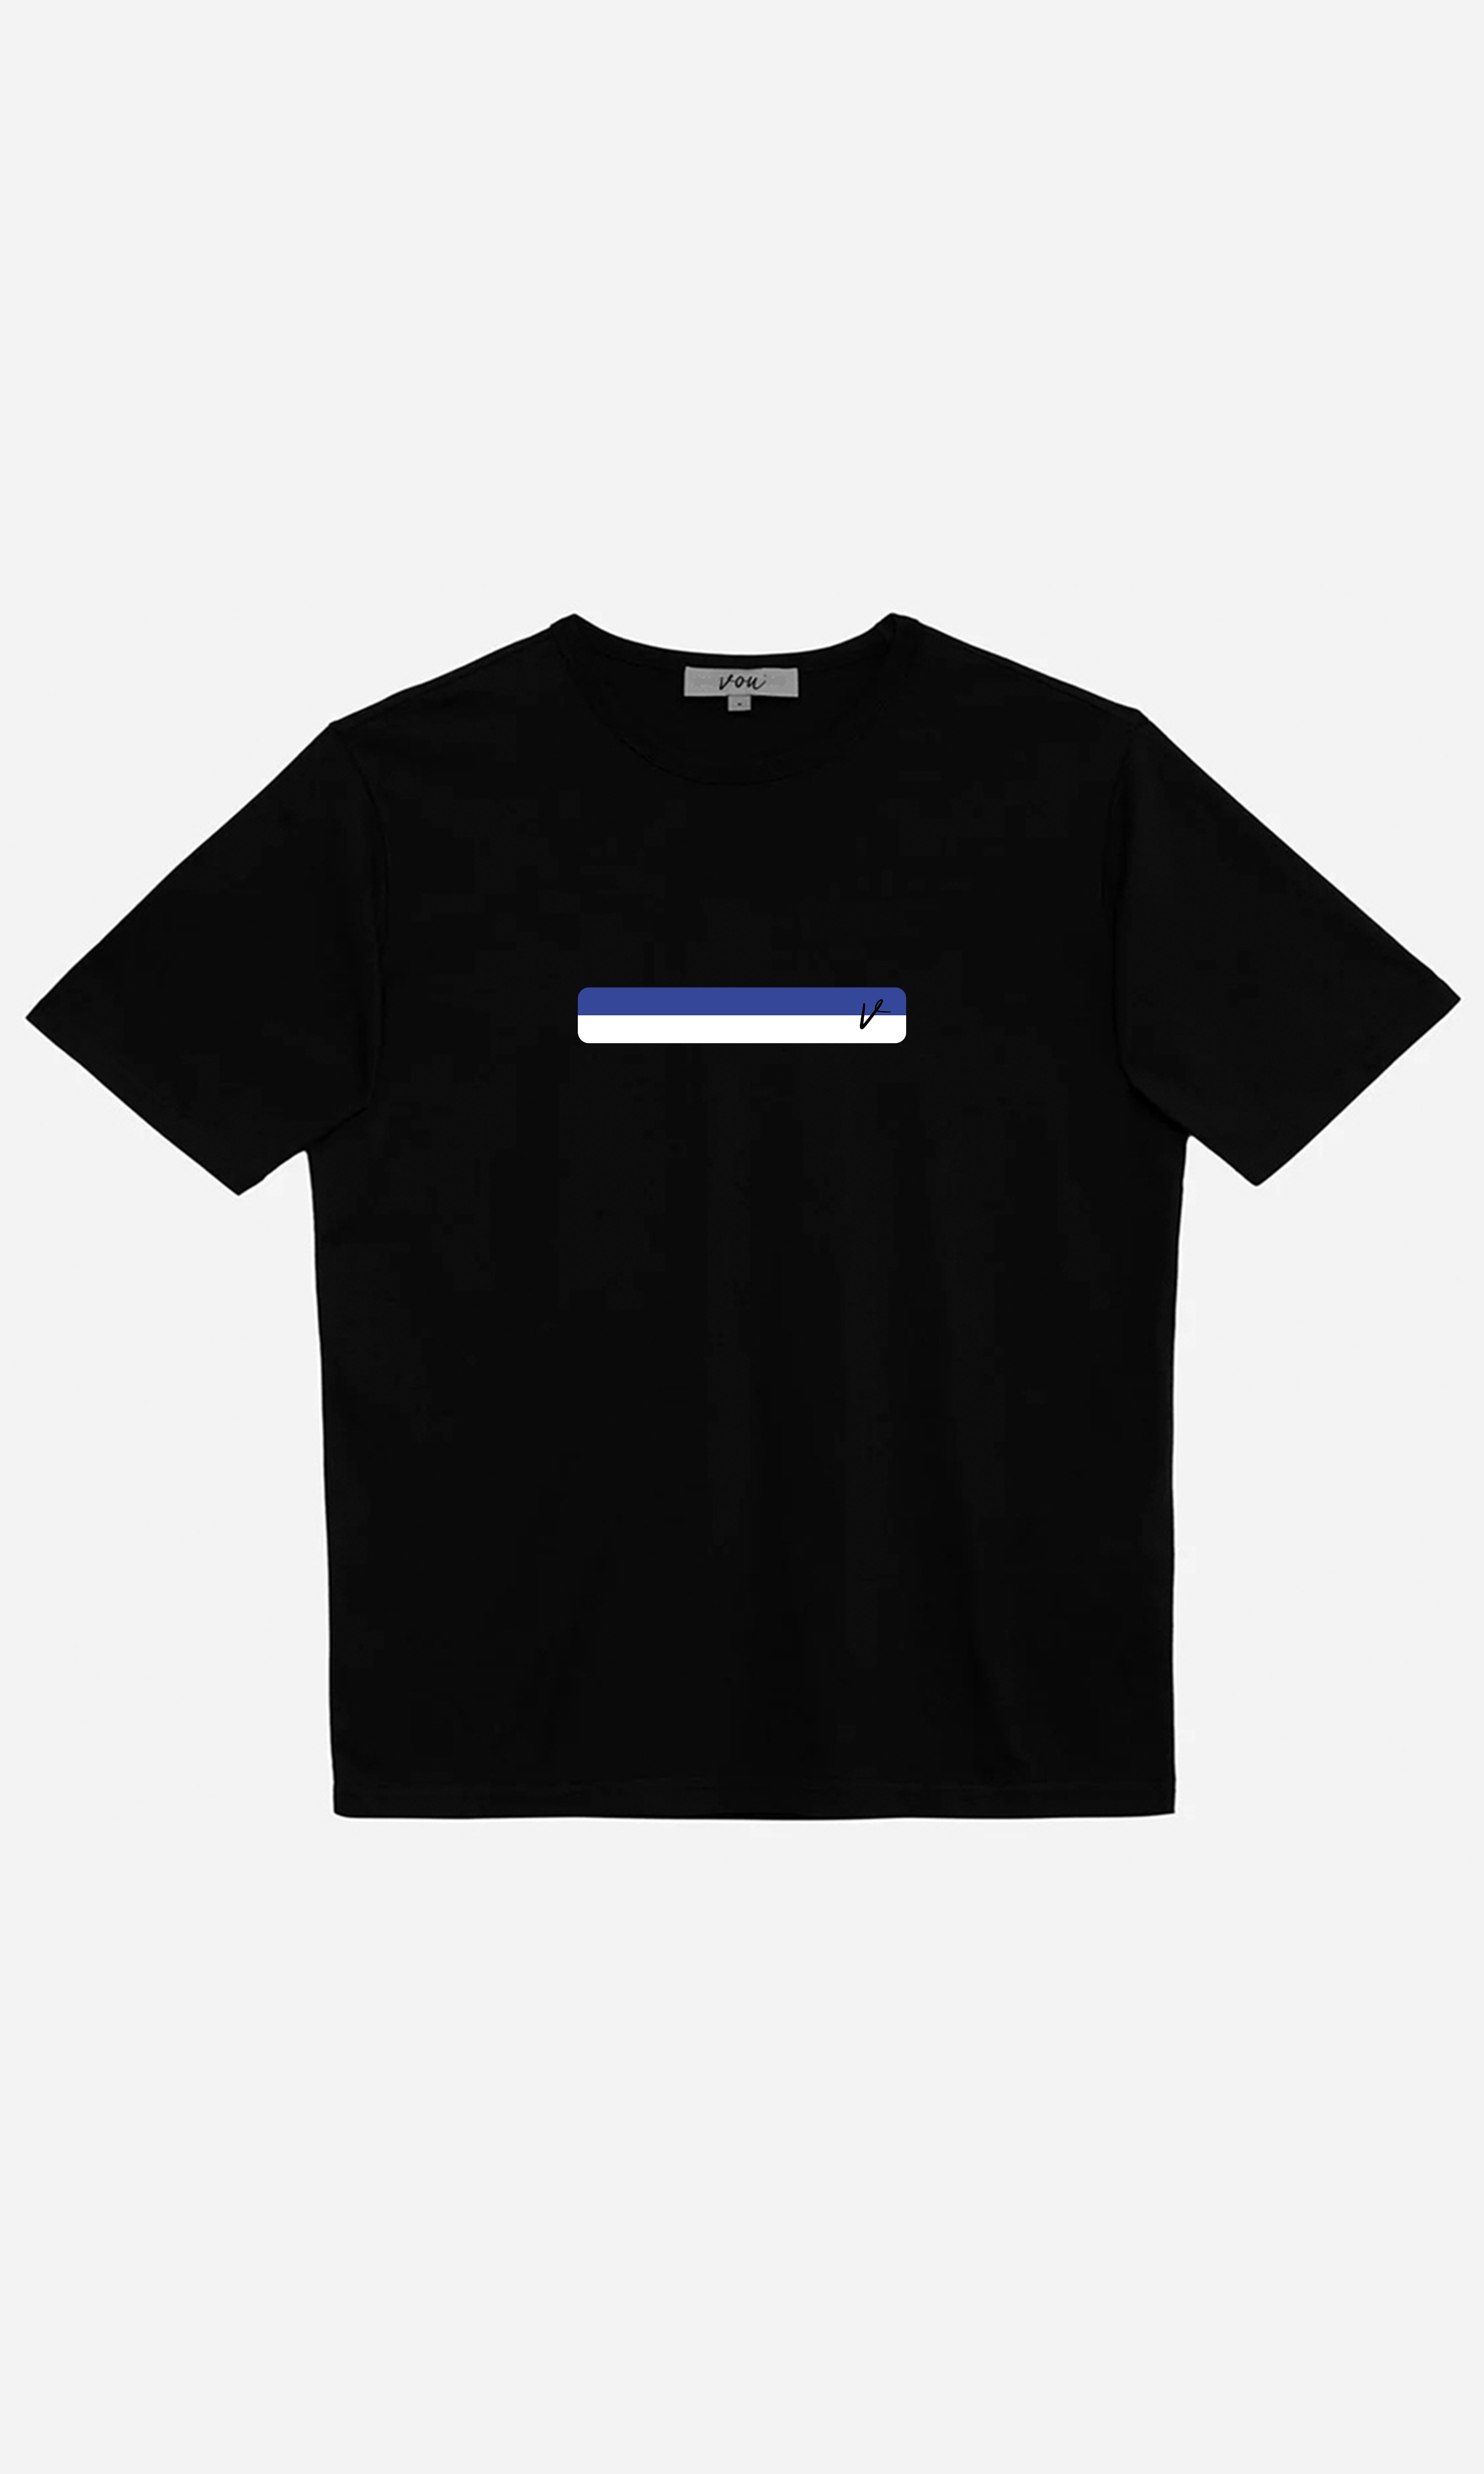 Design Studio Oversize Baskılı Unisex T-Shirt